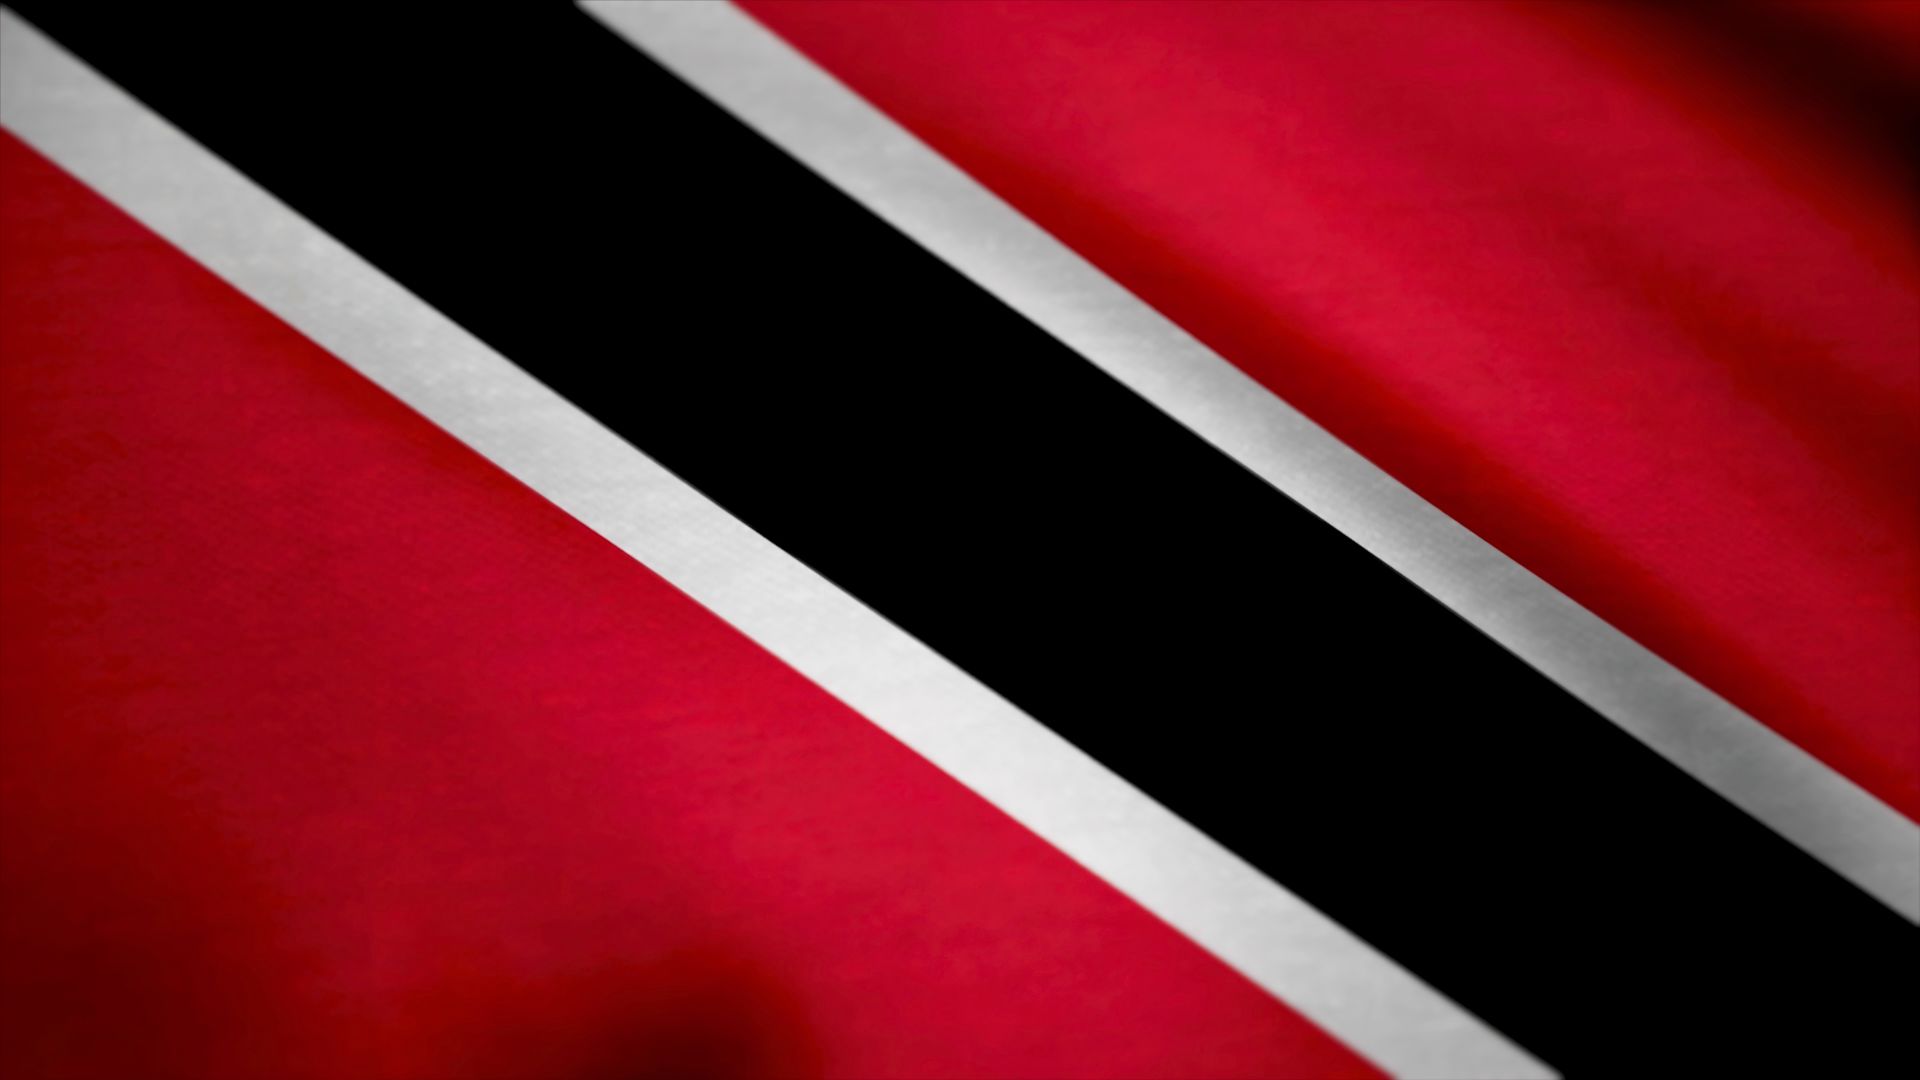 A bandeira de Trindade e Tobago. Ela possui três cores: vermelho, preto e branco.